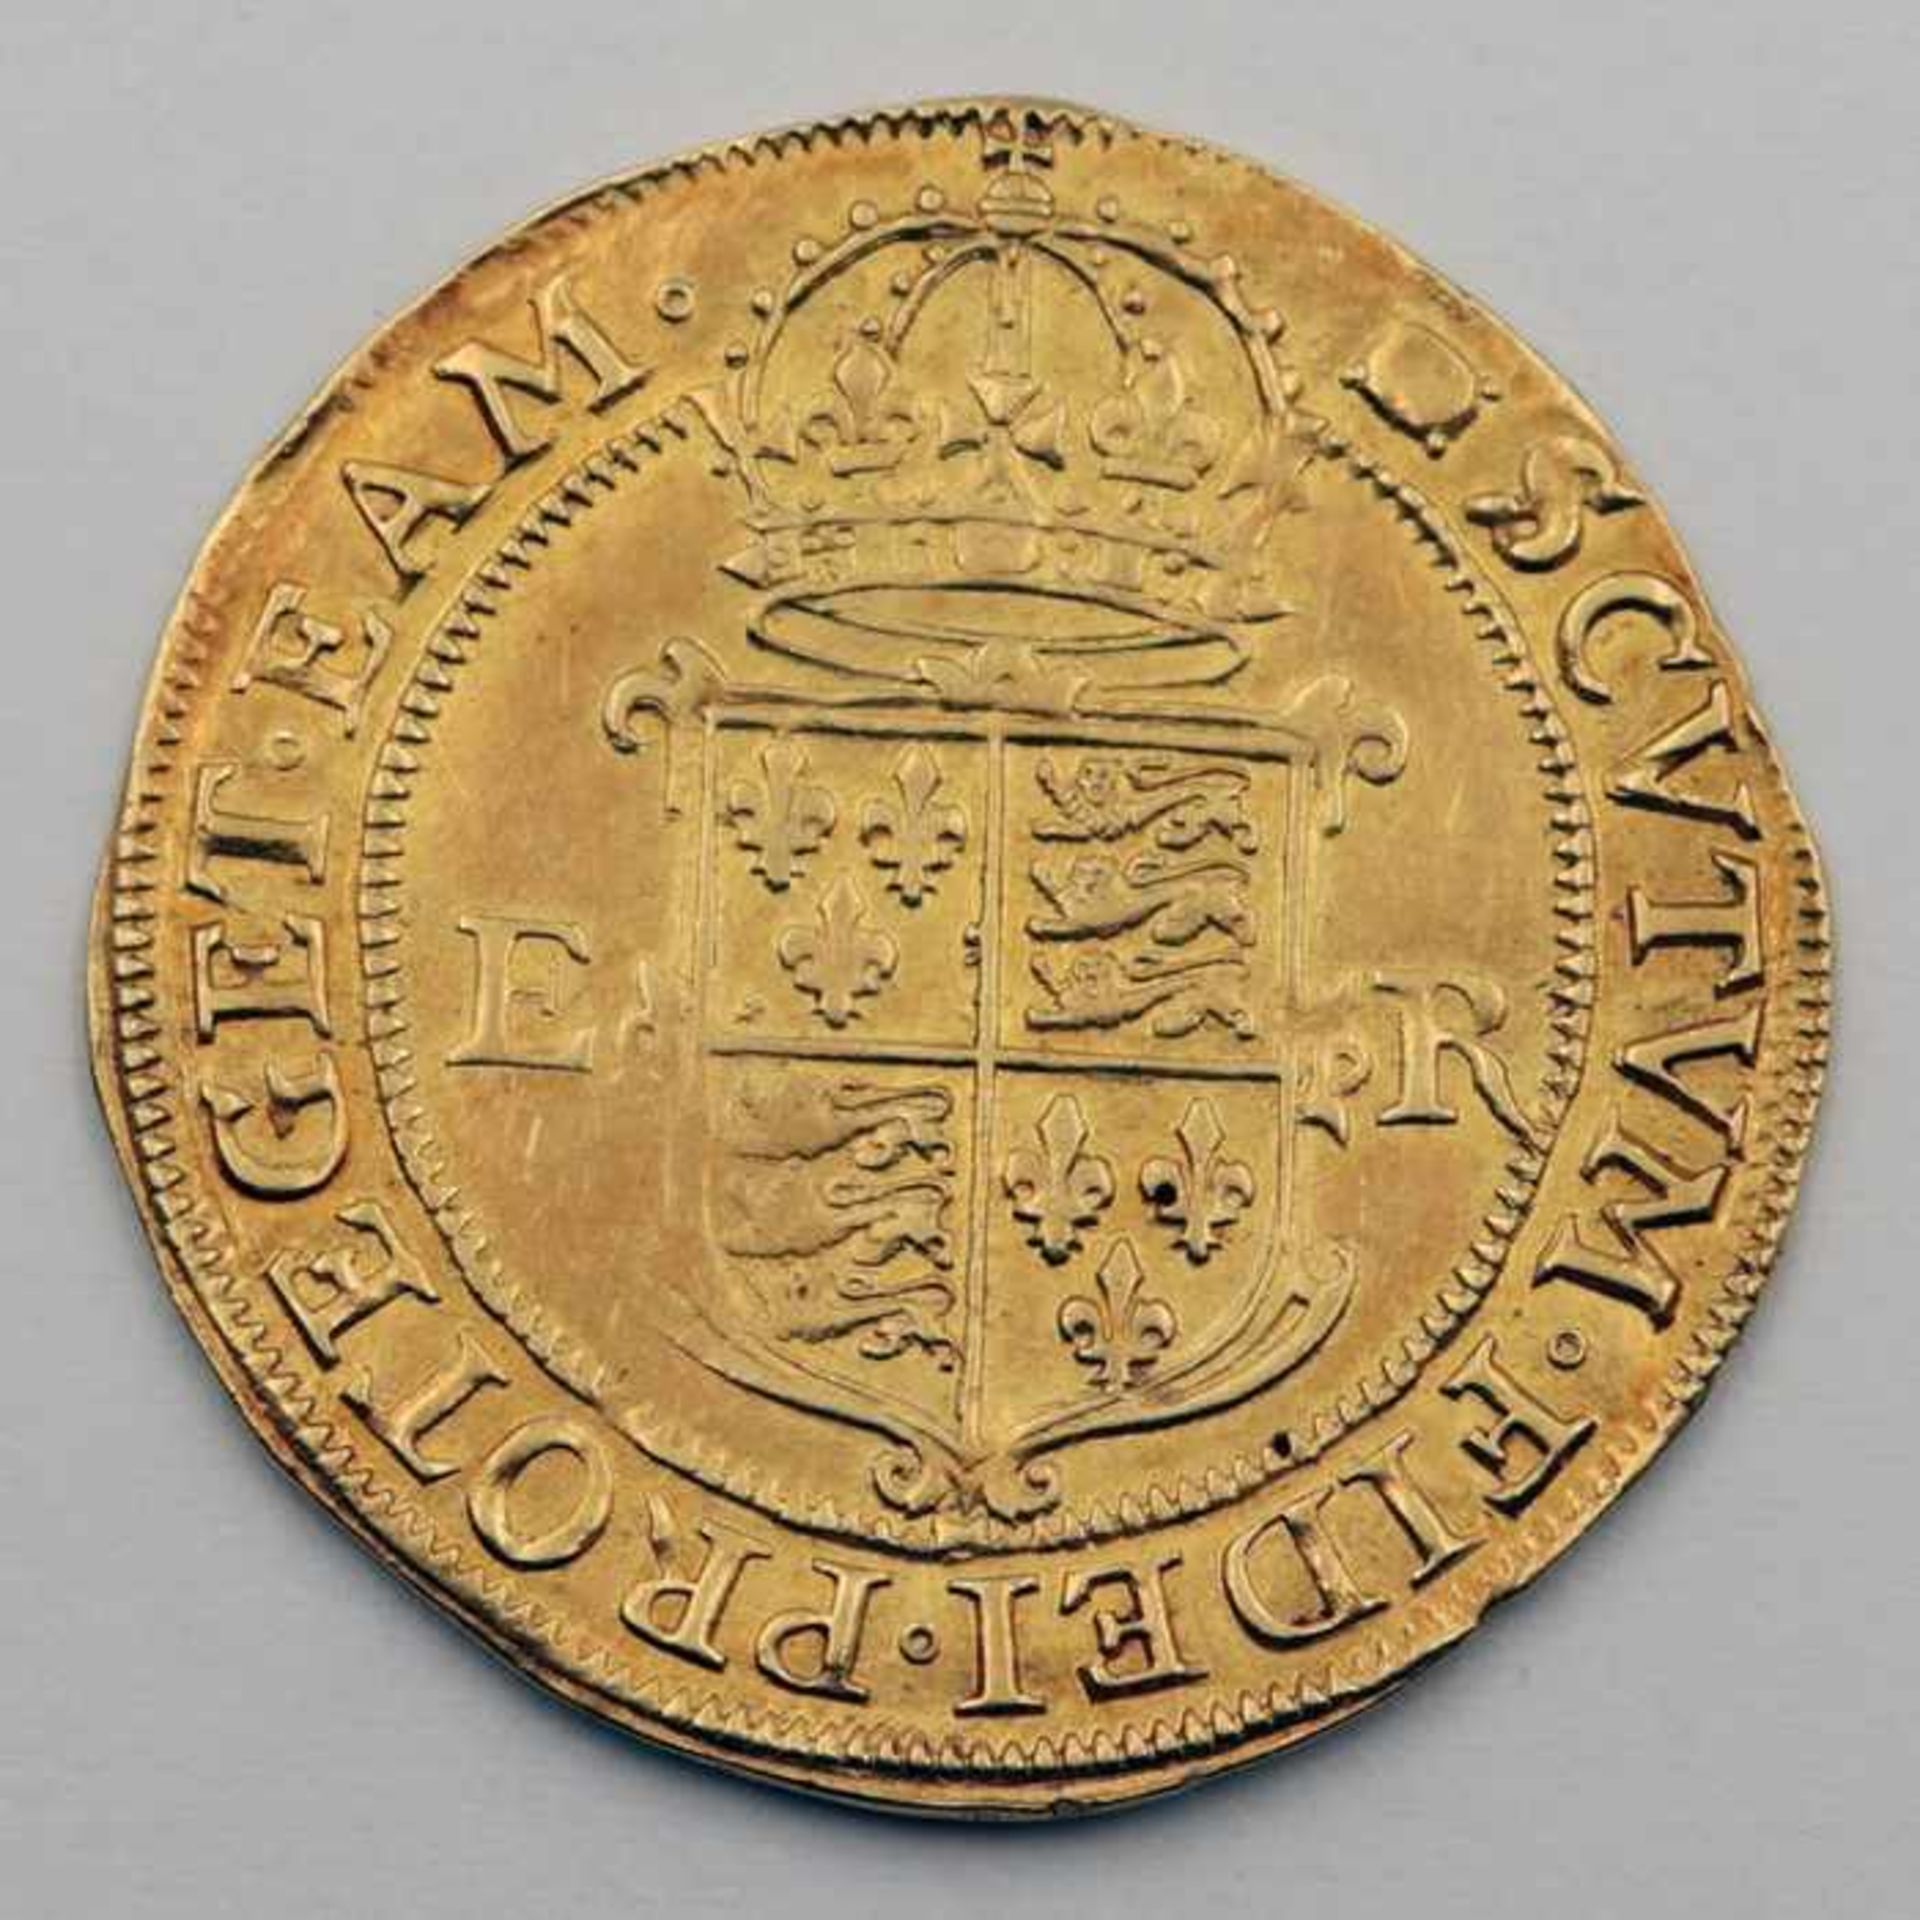 Goldmünze - EnglandElisabeth I 1558 - 1603, Gold Pound, o.J., Gewicht ca. 11.20 g, D .ca.37,5 mm, - Image 2 of 2